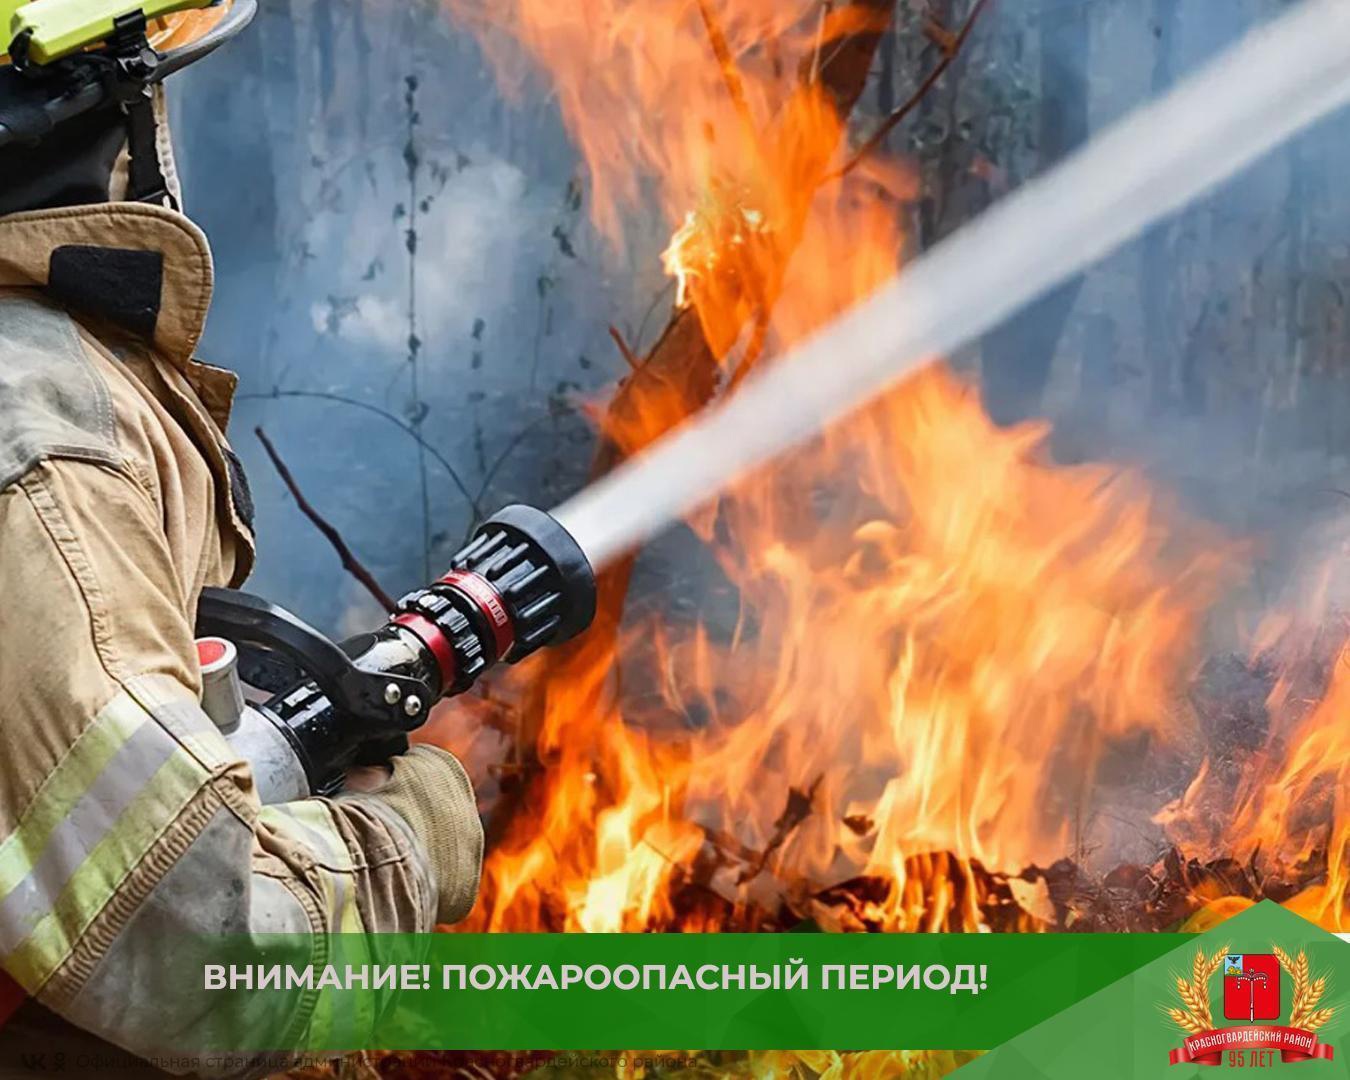 Уважаемые жители района, соблюдайте правила пожарной безопасности:.